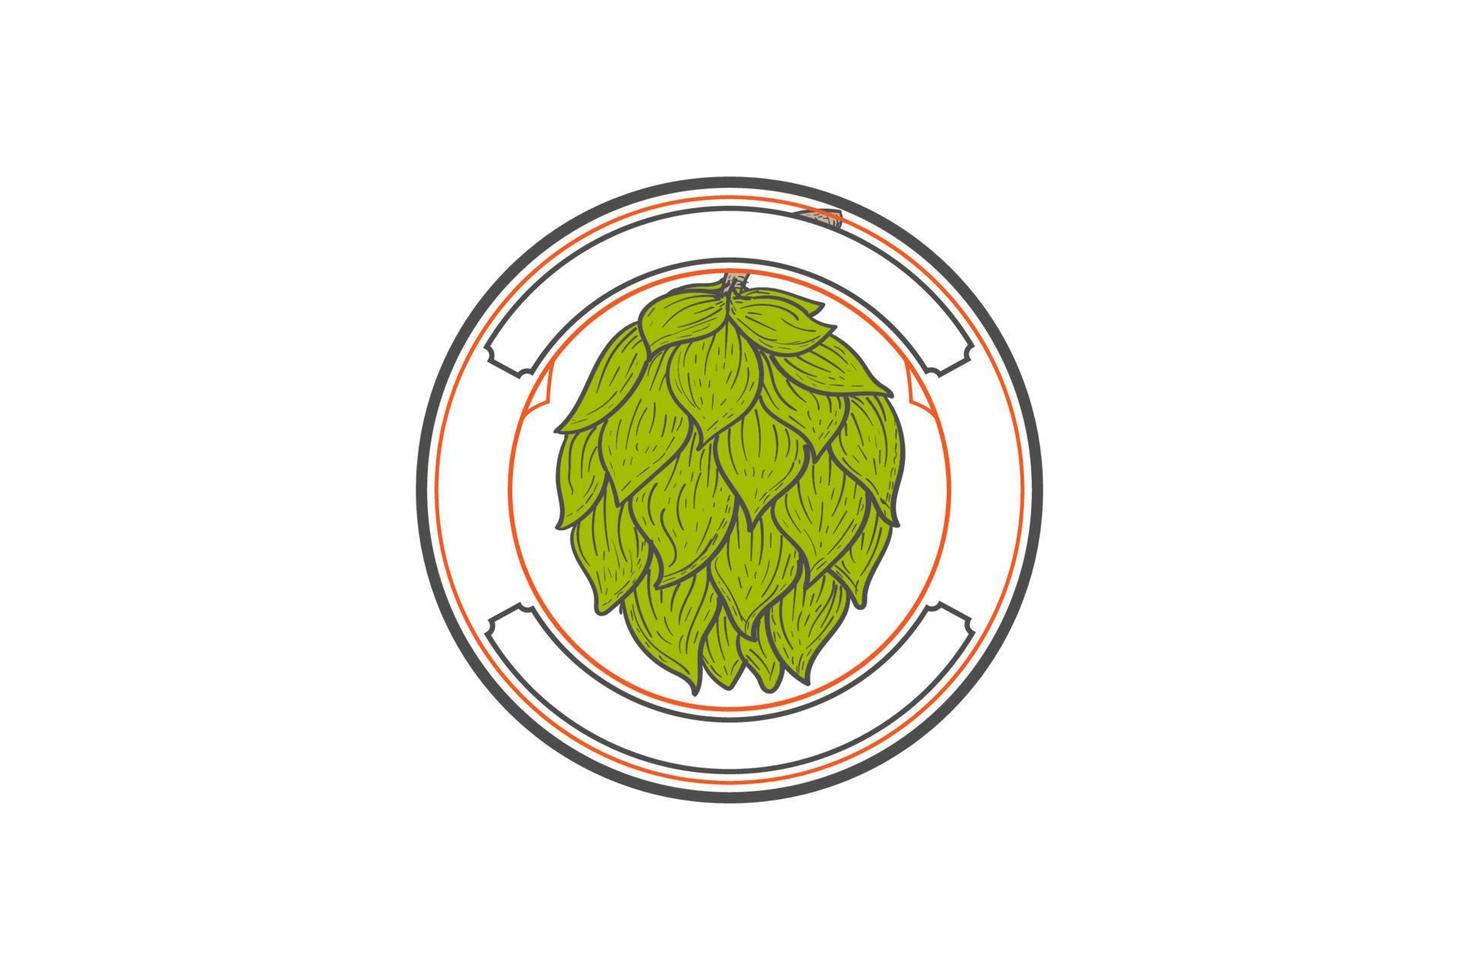 vintage retro cirkel circulaire ronde hop bloem voor ambachtelijk bier brouwen brouwerij badge embleem label logo ontwerp vector